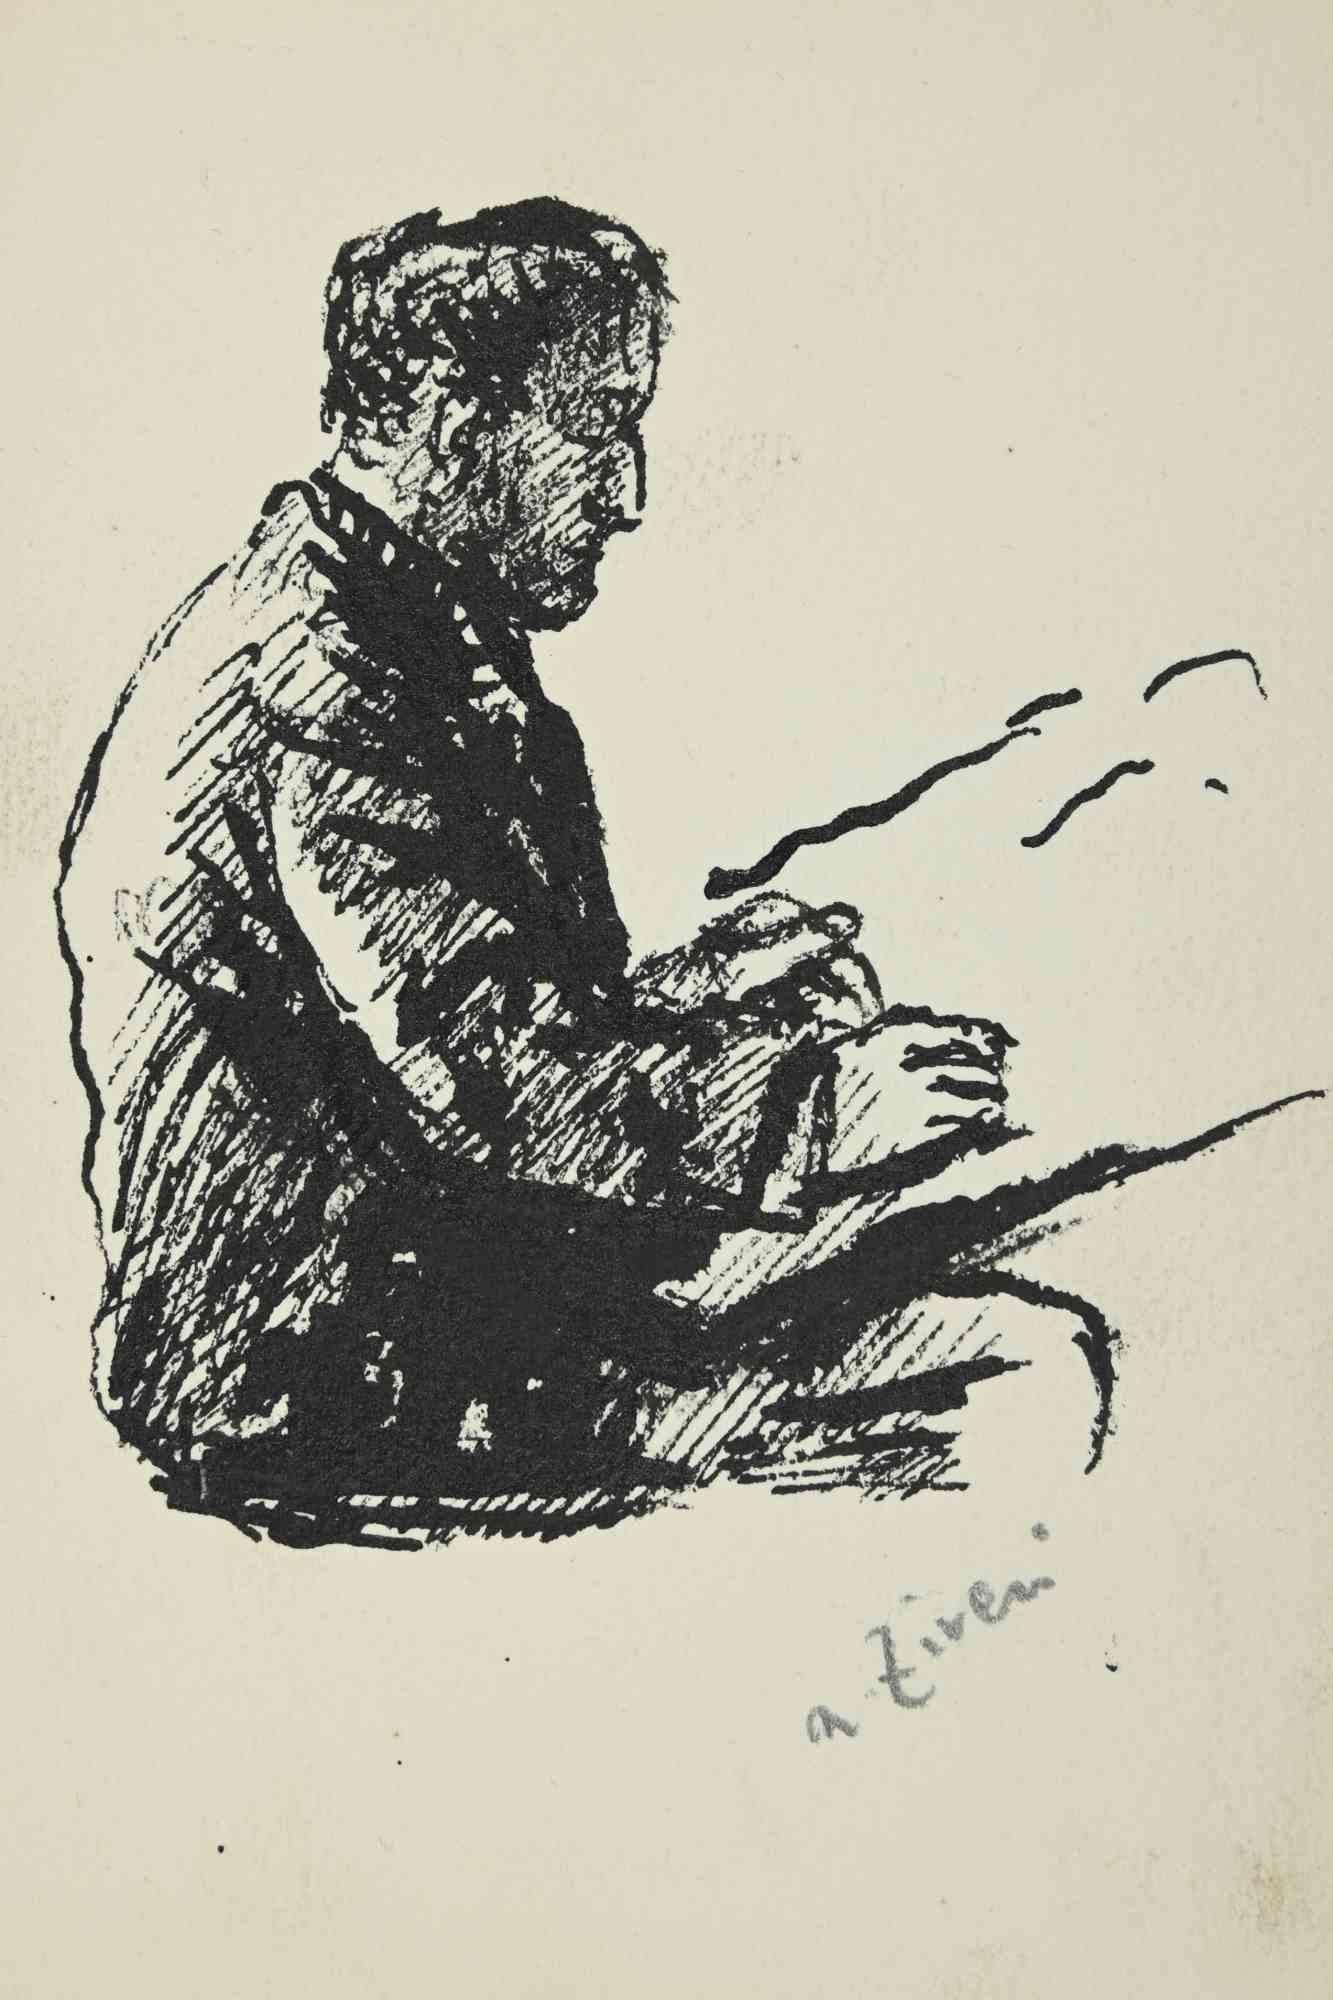 Der lesende Mann ist eine Zeichnung von Alberto Ziveri aus den 1930er Jahren

Aquarell auf Papier.

Handsigniert.

In gutem Zustand. 

Das Kunstwerk wird durch geschickte Striche meisterhaft dargestellt.

Alberto Ziveri (Rom, 1908 - 1990), der